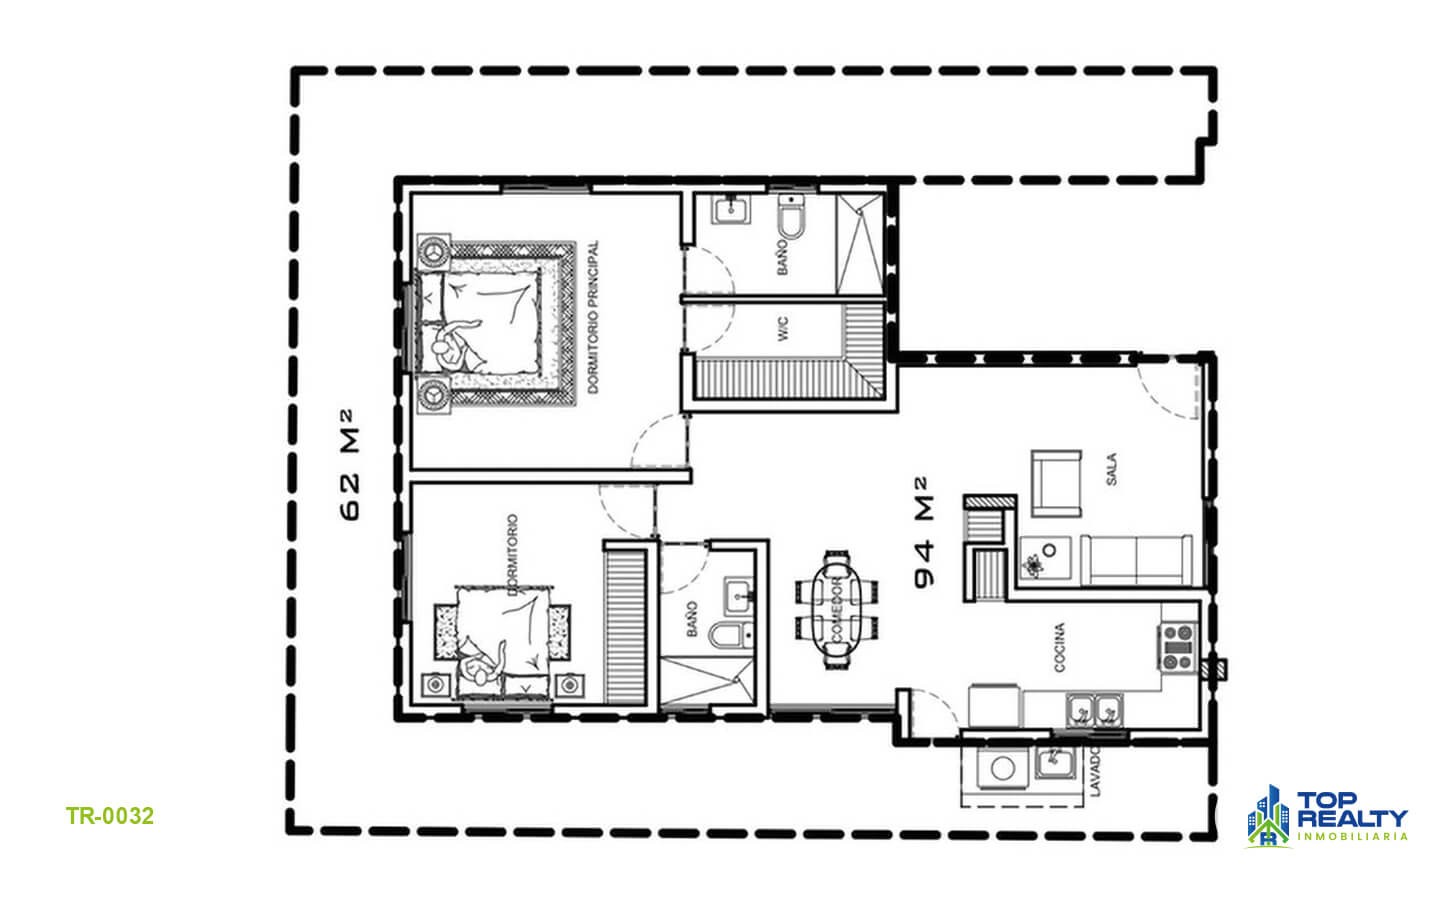 apartamentos - TR-0032A: Exclusivo proyecto: un apartamento por nivel, ubicación privilegiada 1